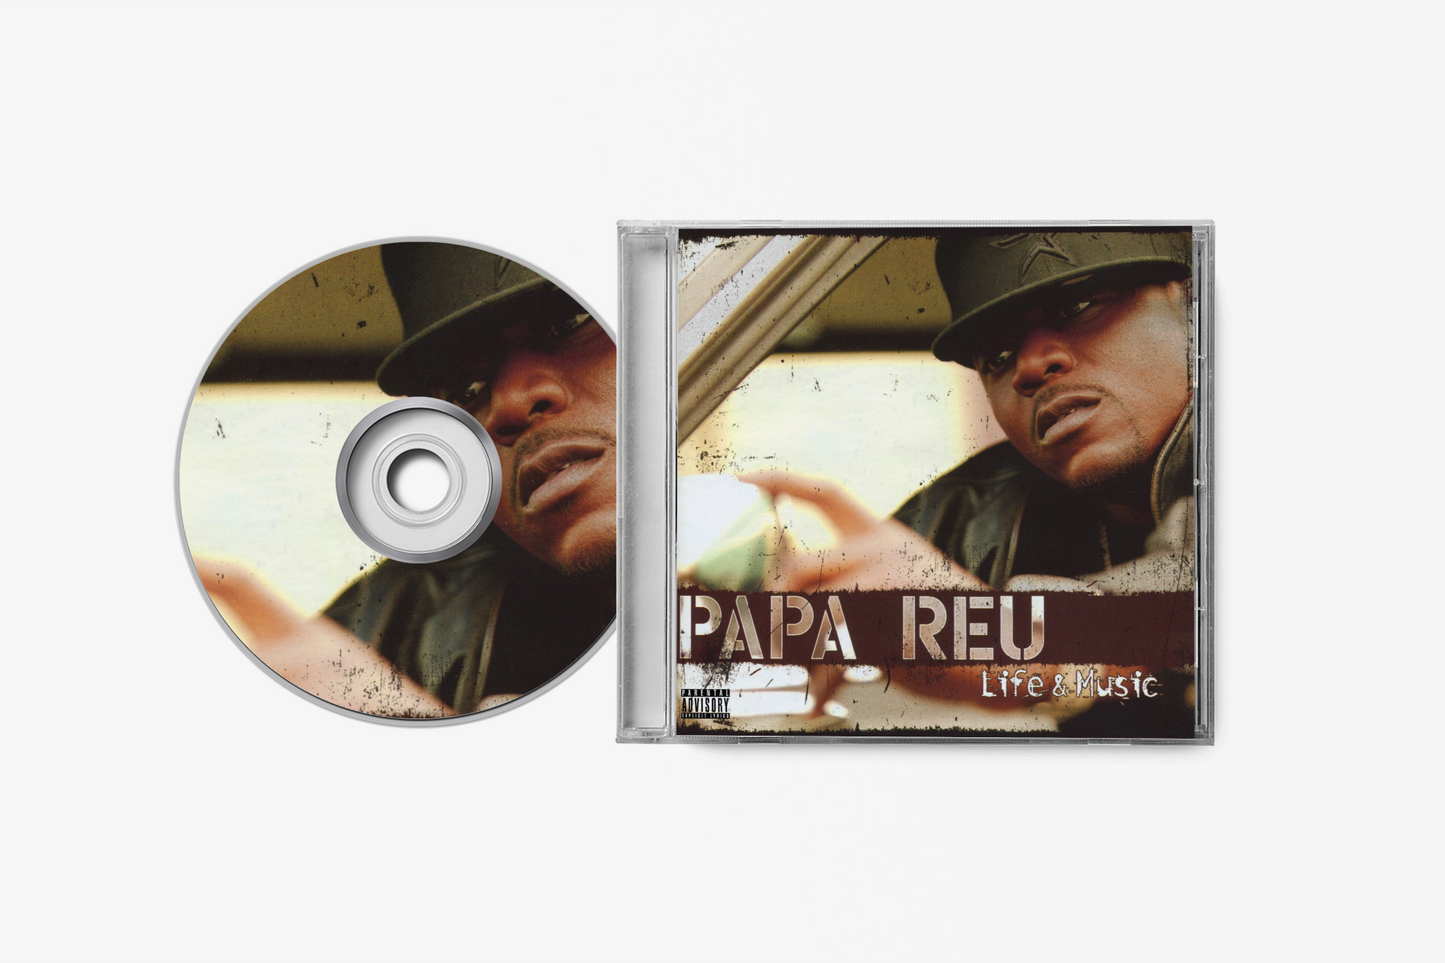 Papa Reu "Life and Music" CD